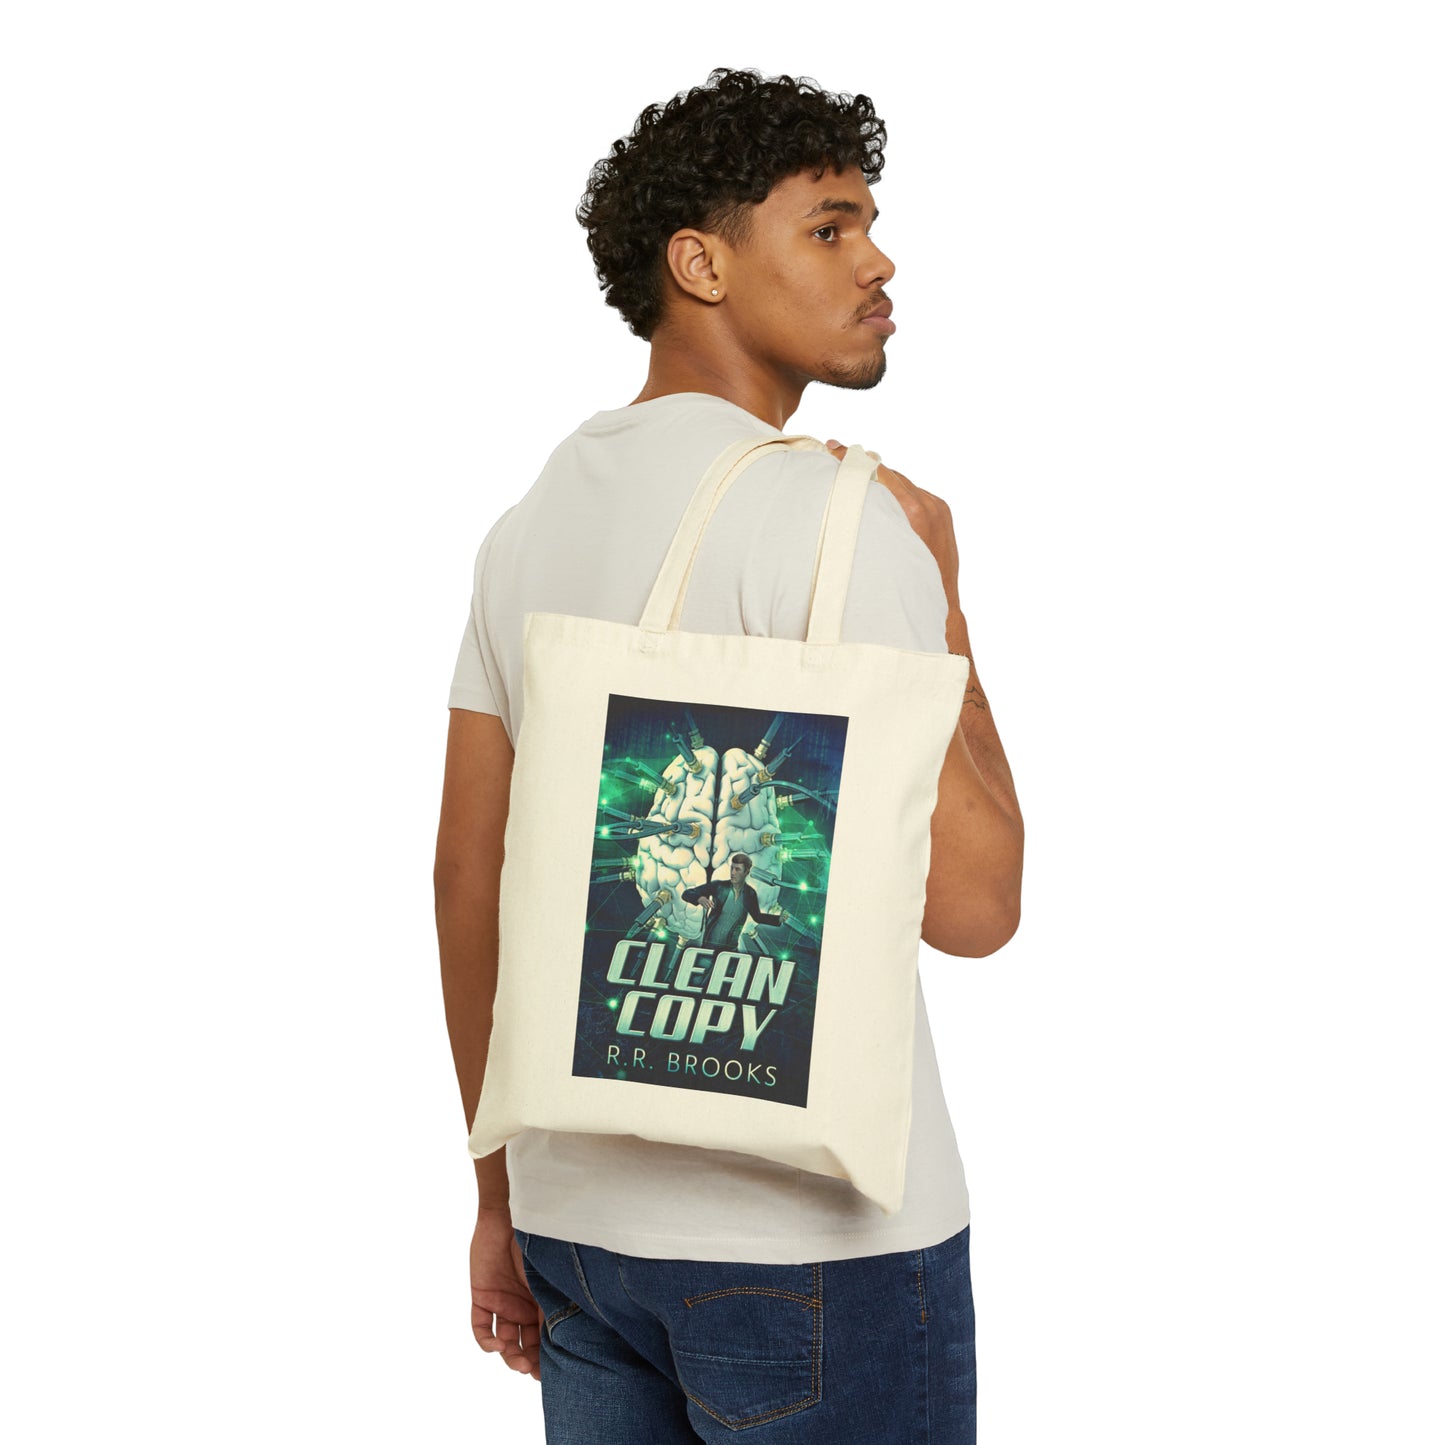 Clean Copy - Cotton Canvas Tote Bag